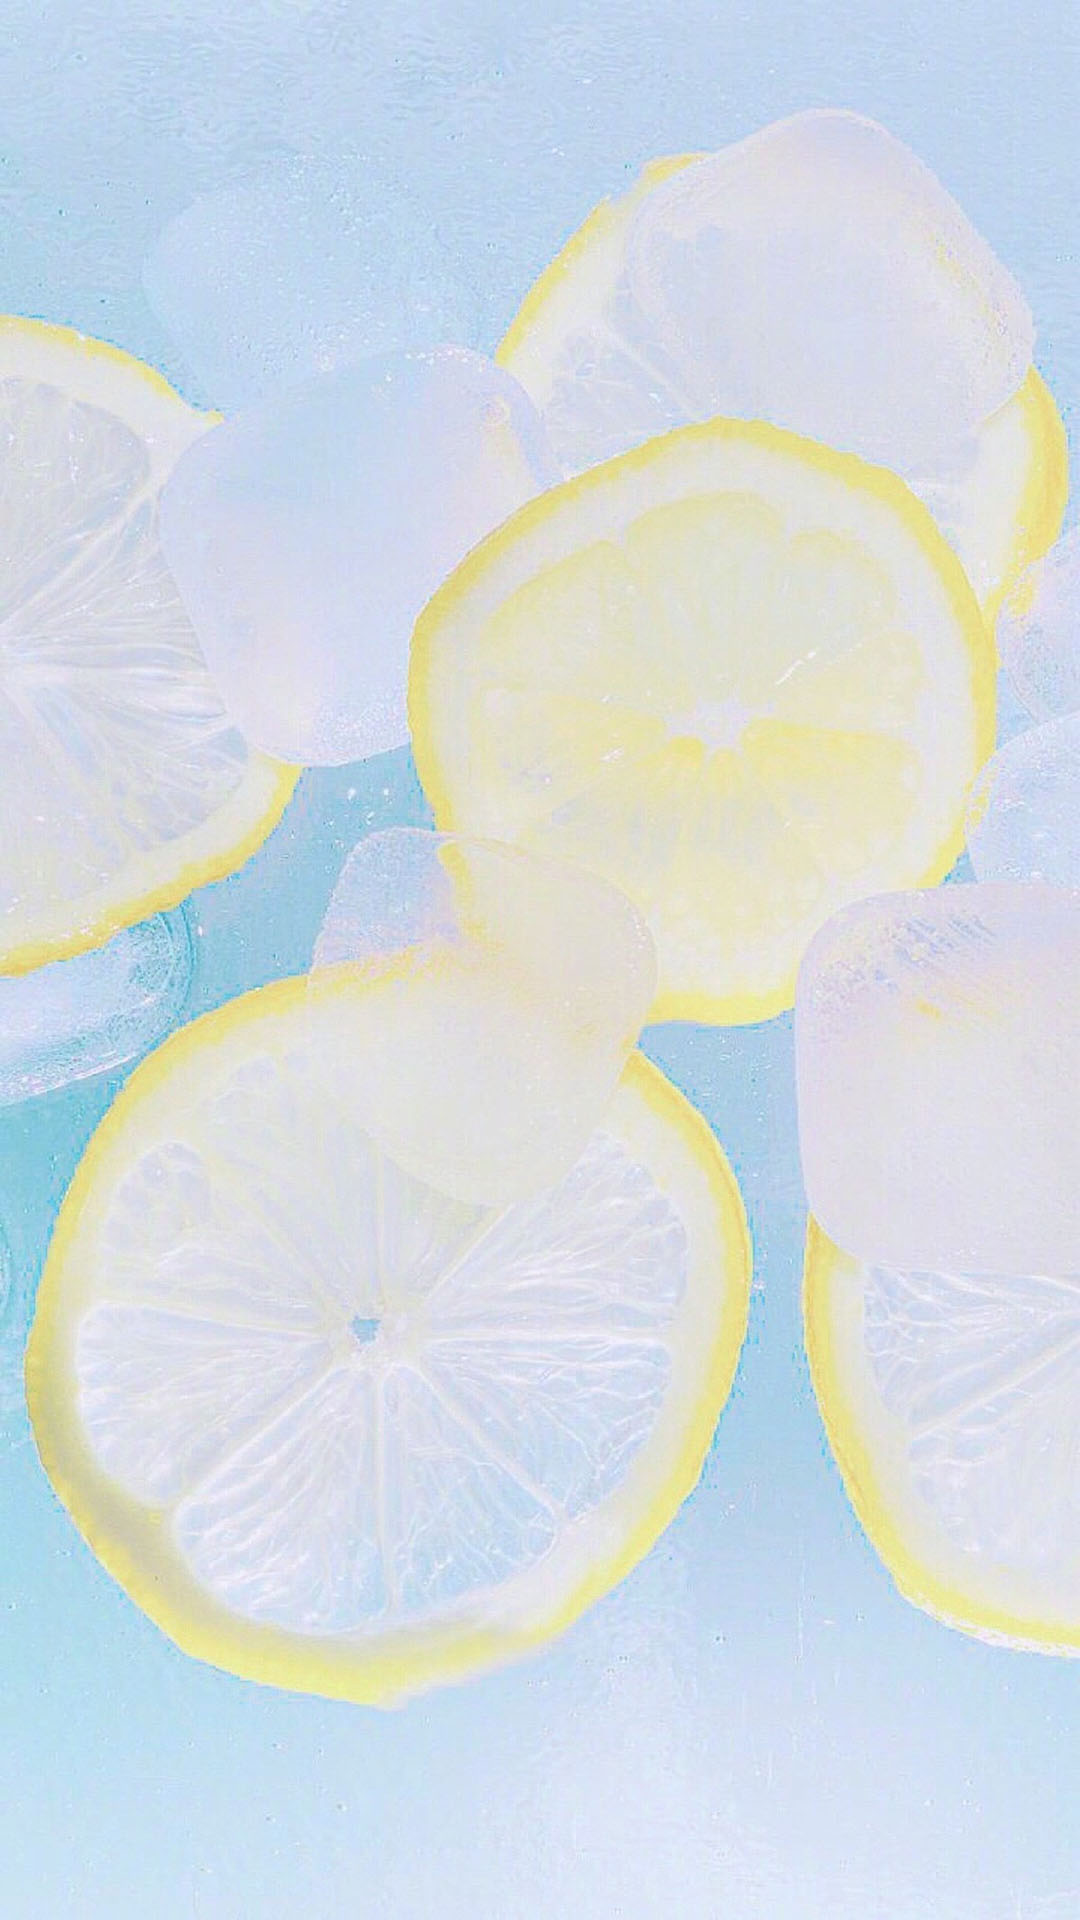 冰块柠檬小清新夏日手机壁纸图片